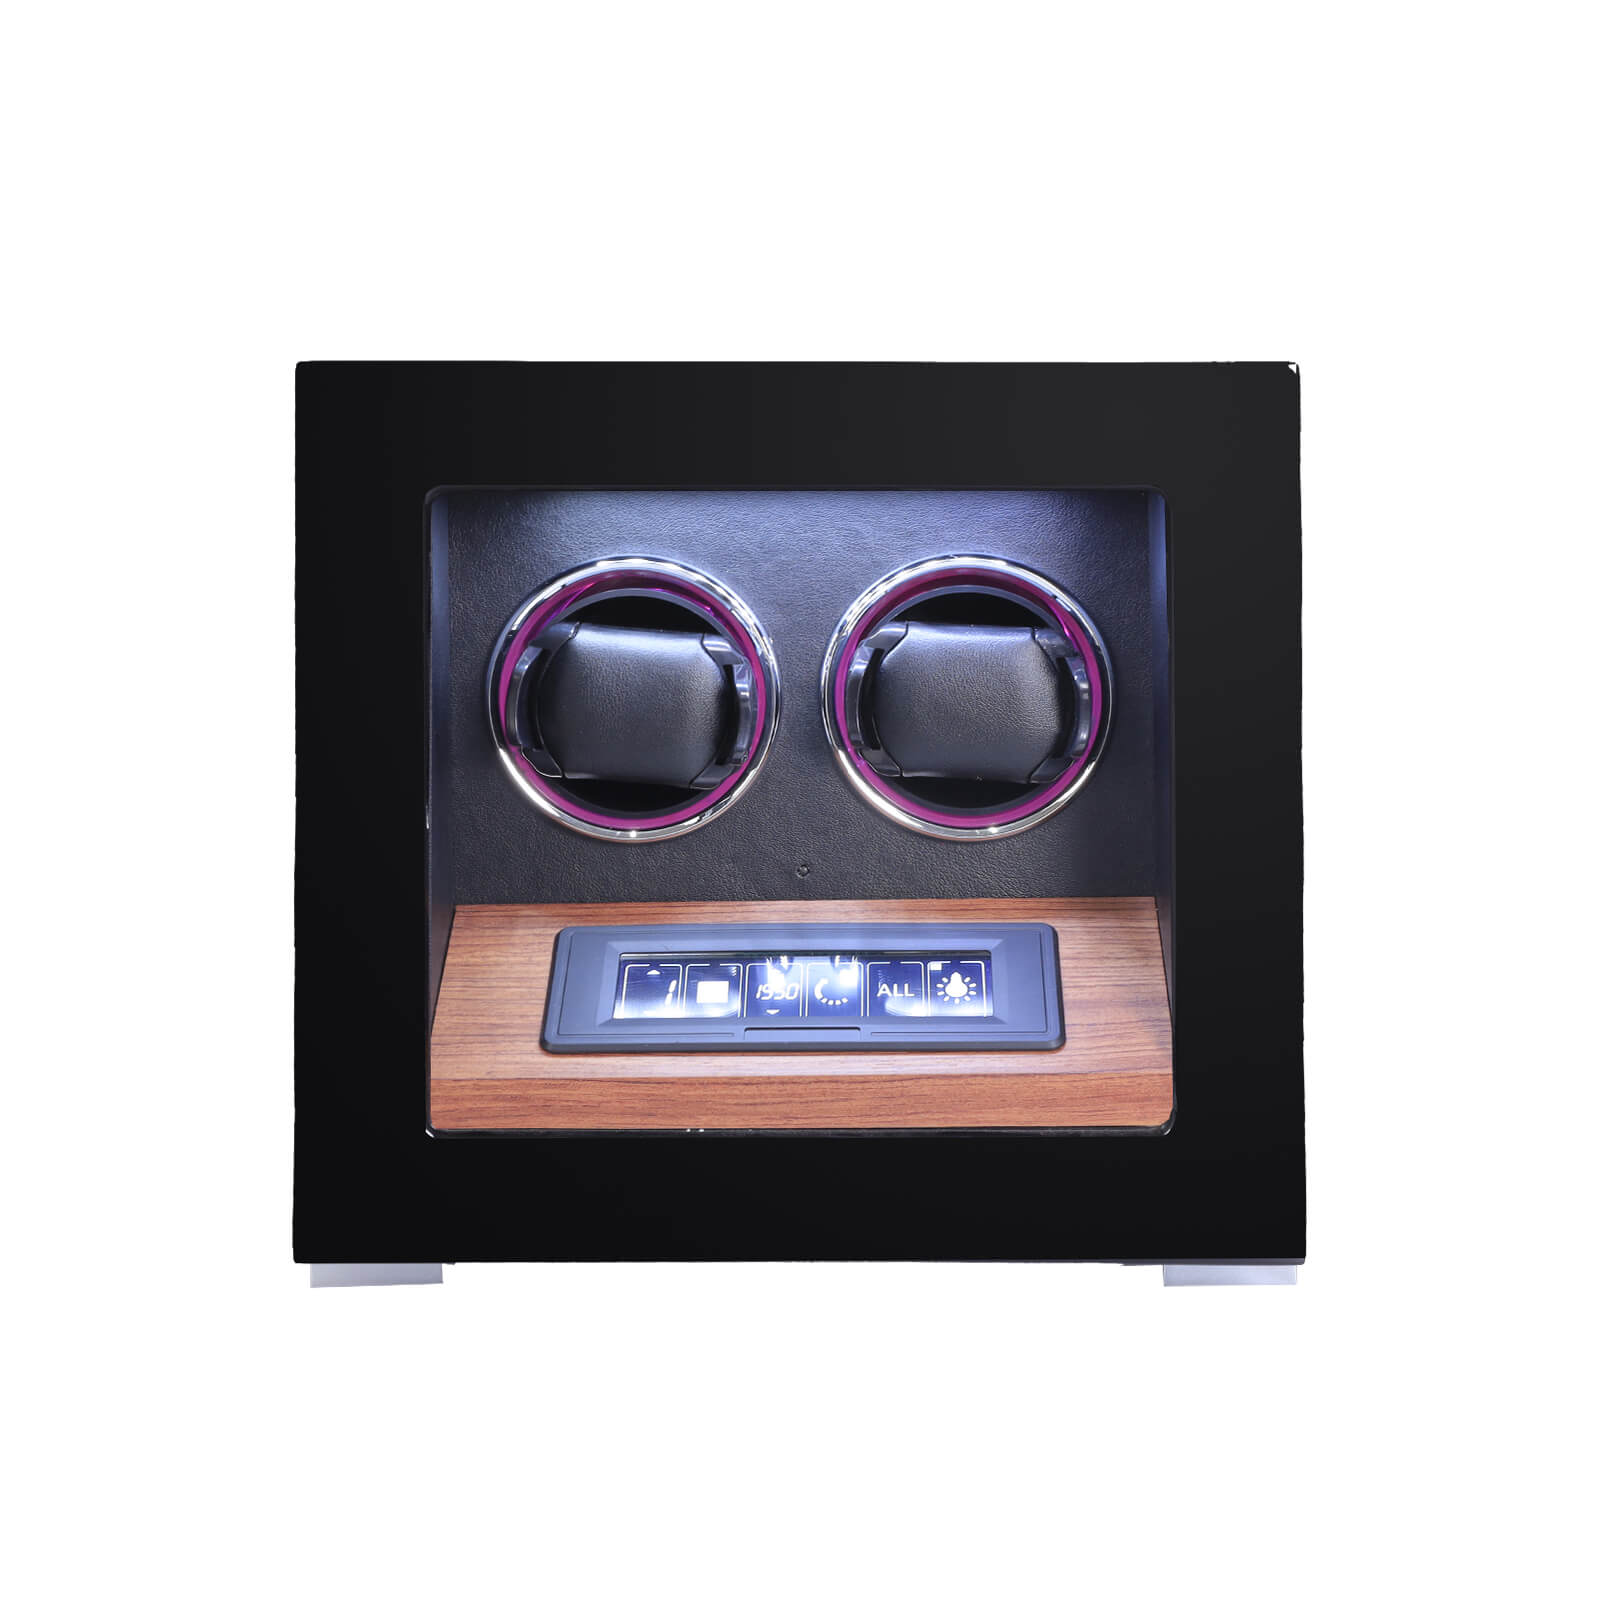 2 Uhrenbeweger mit Fingerabdruck-Freischaltung, RGB-Atmosphärenbeleuchtung